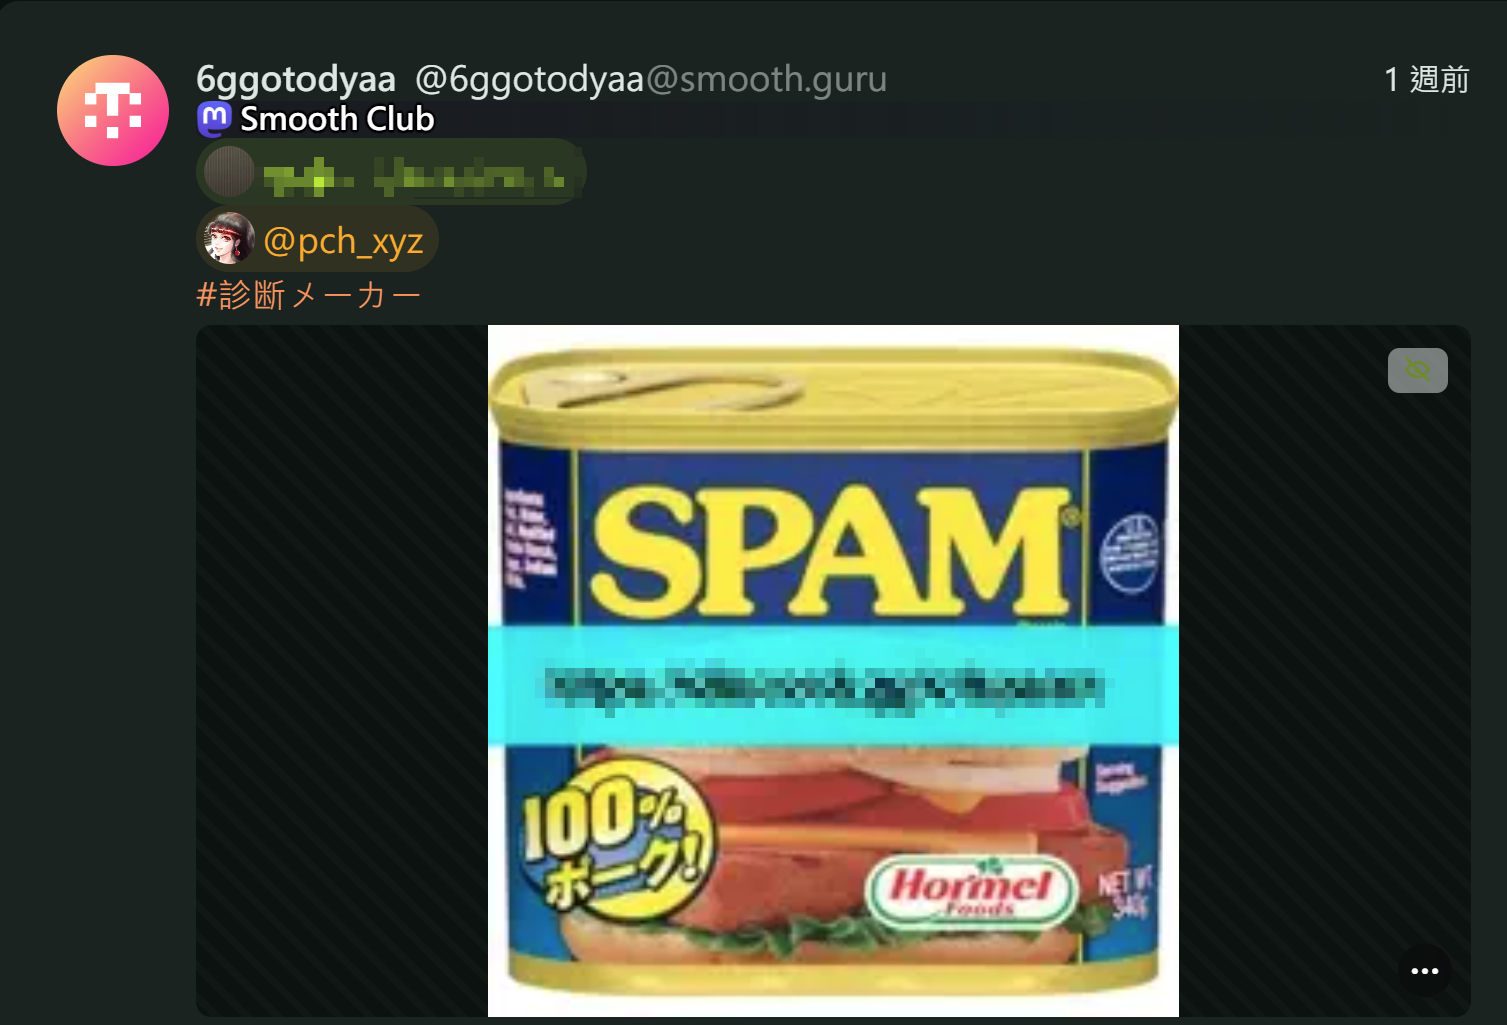 使用 SPAM 罐頭圖片的 spam